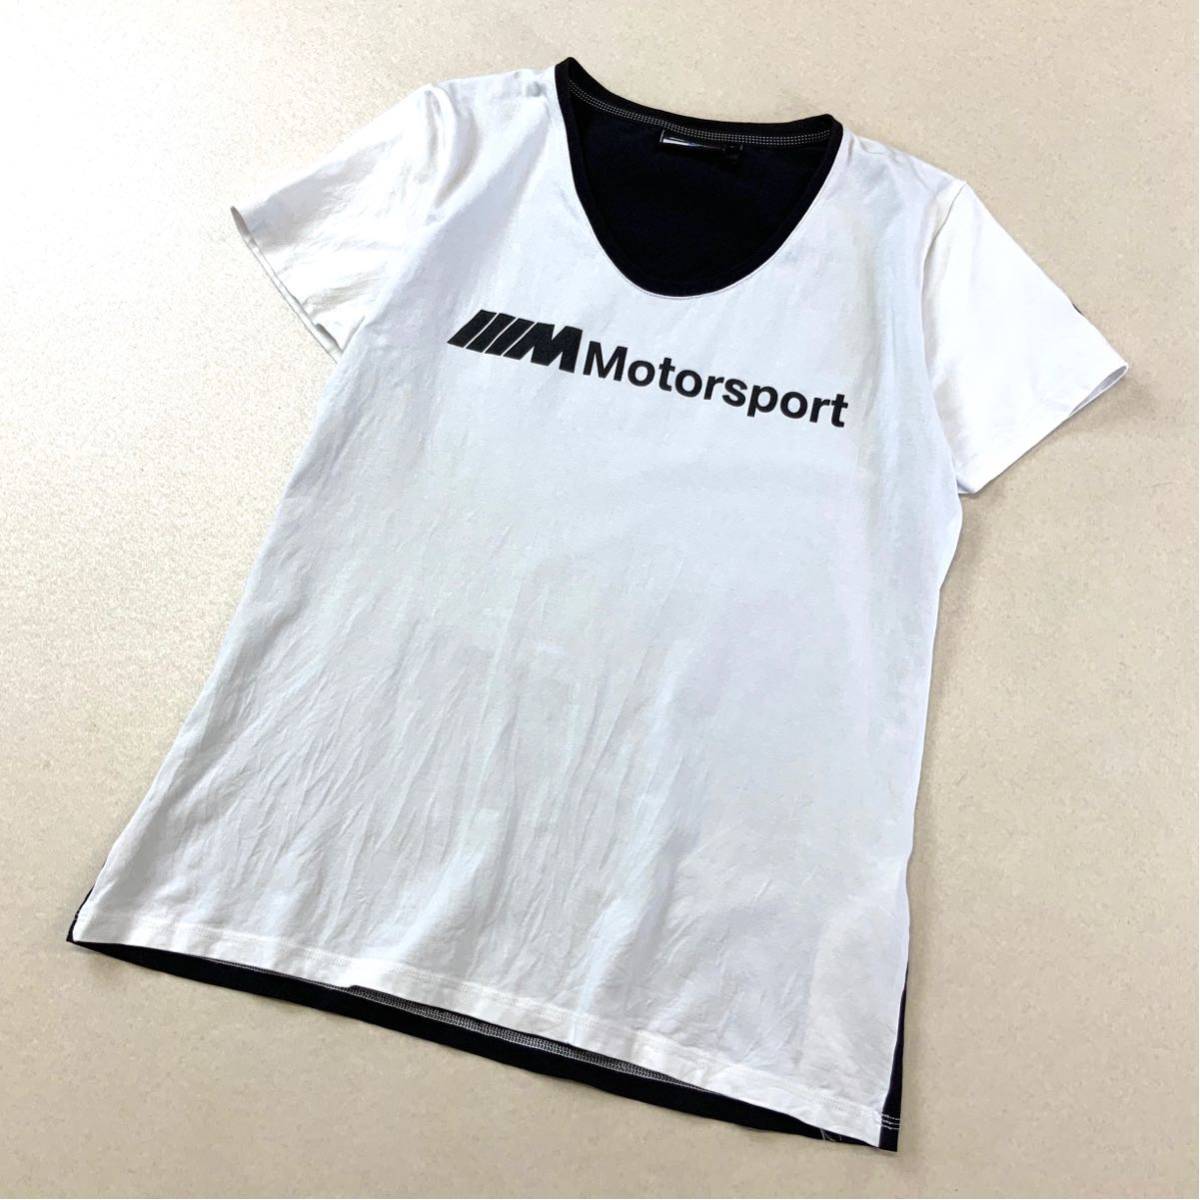 希少 企業系 Microsoft マイクロソフト 両面デザイン 半袖 tシャツ メンズ Lサイズ ホワイト ブラック_画像1